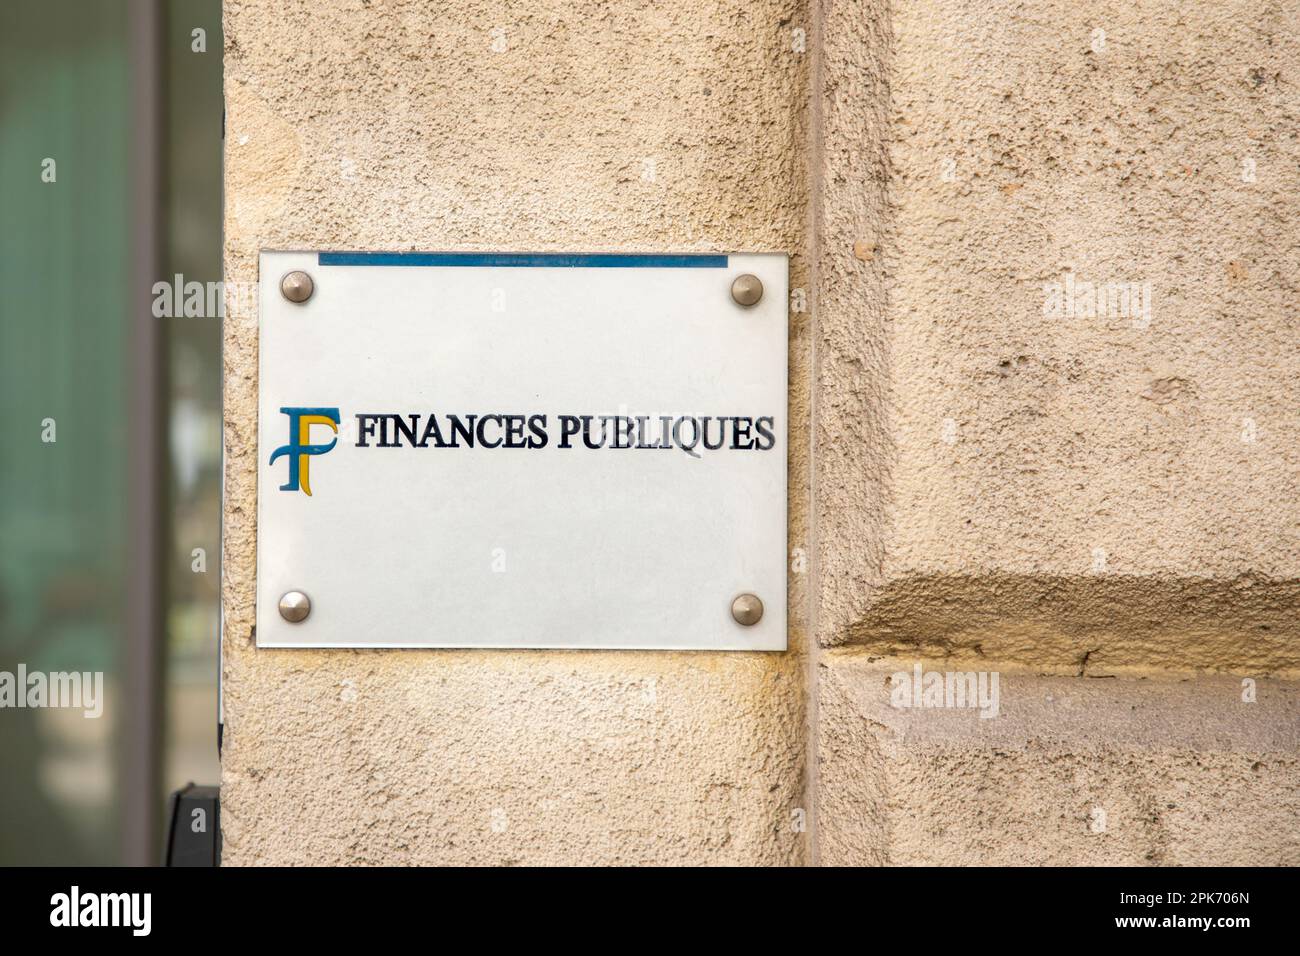 Bordeaux , Aquitaine  France - 04 02 2023 : finances publiques french office public finances logo text agency sign brand on entrance building Stock Photo